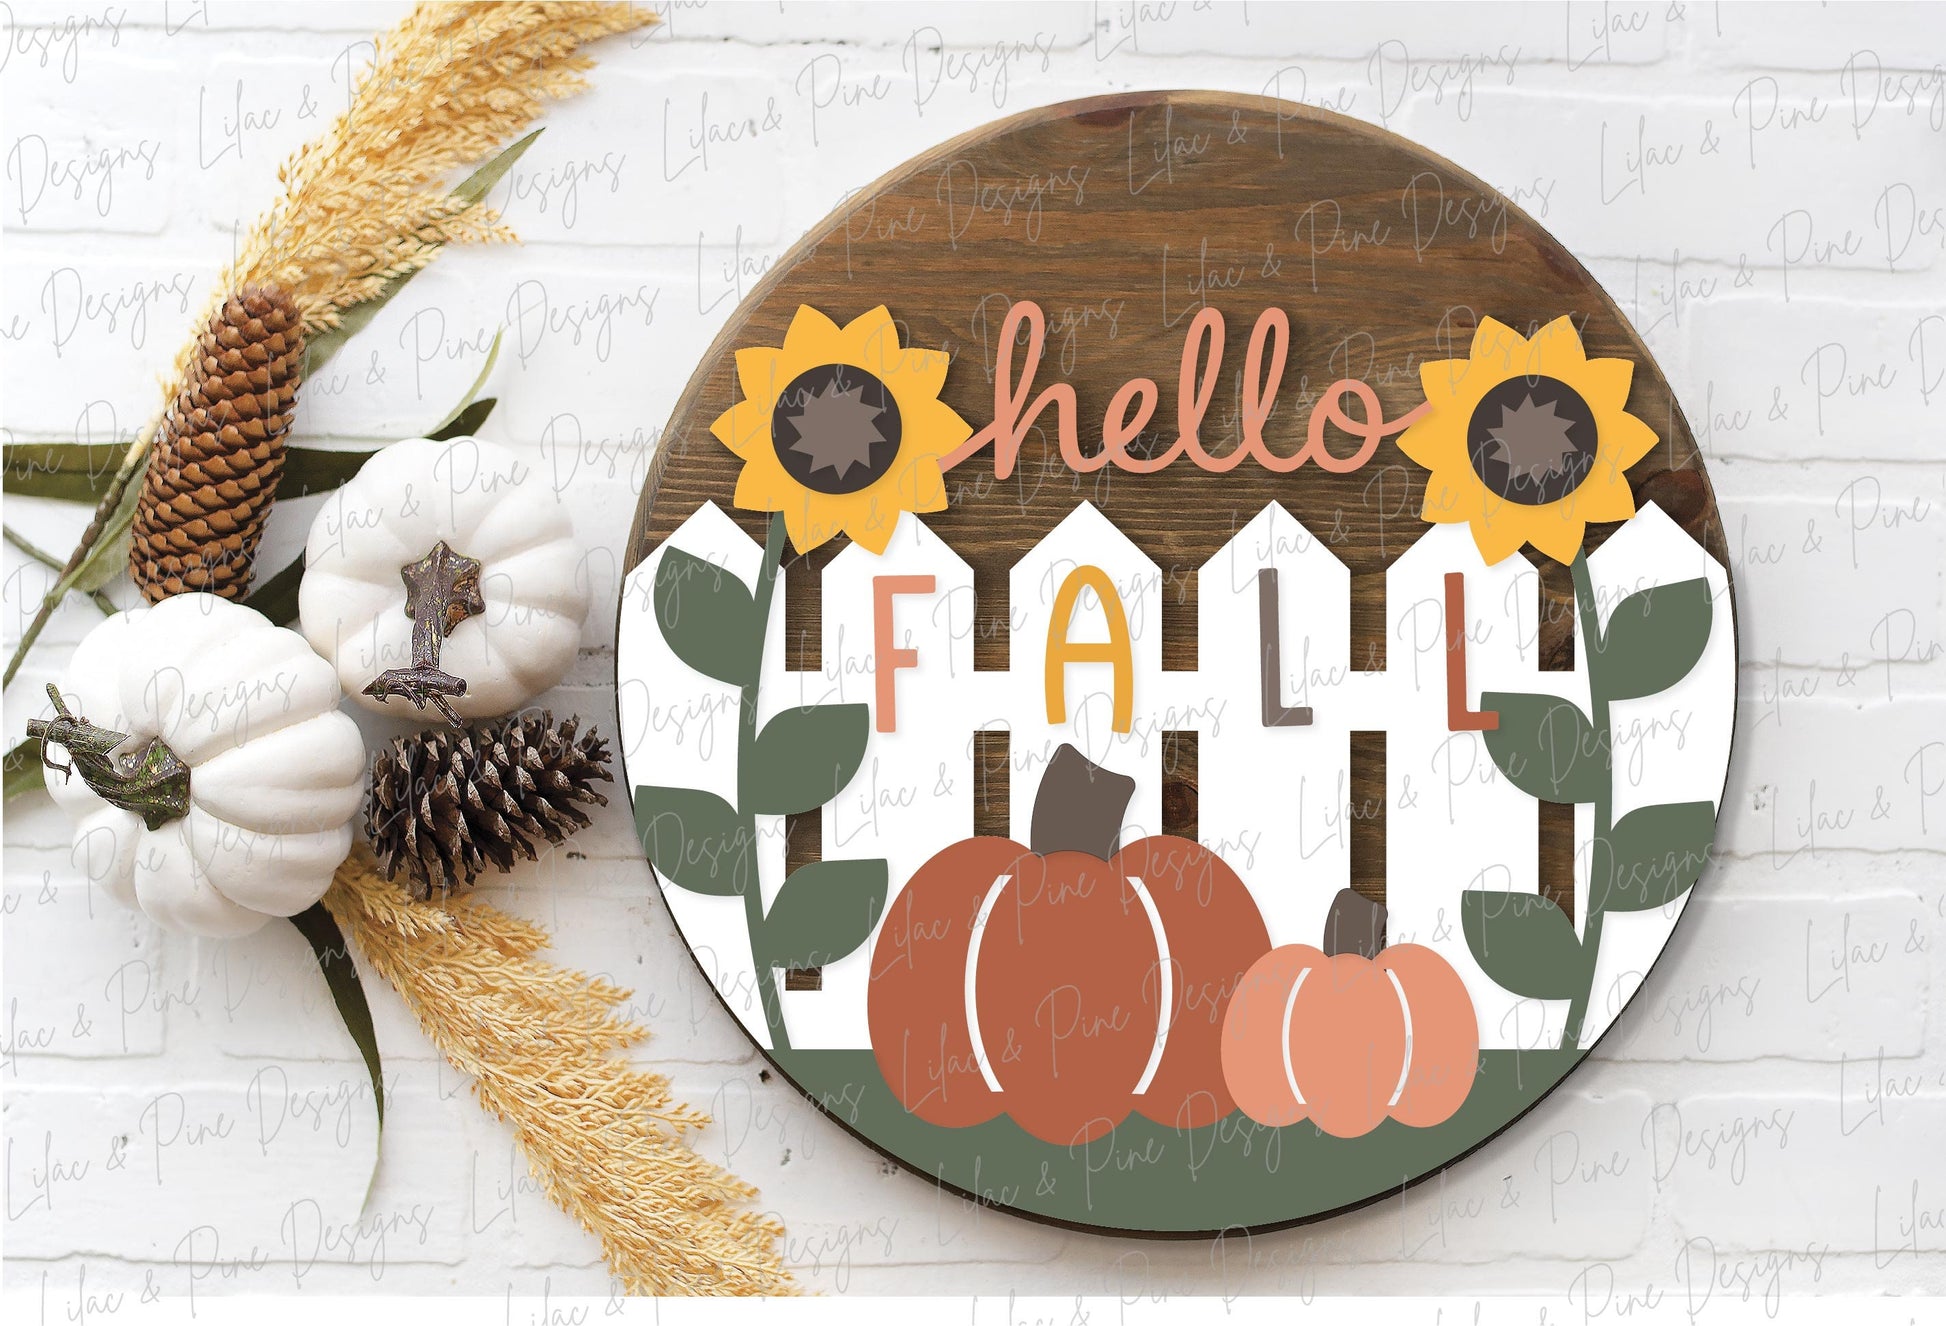 Hello Fall door hanger SVG, Sunflower welcome sign SVG, Pumpkin door hanger svg, Fall porch decor, Autumn svg, Glowforge SVG, laser cut file